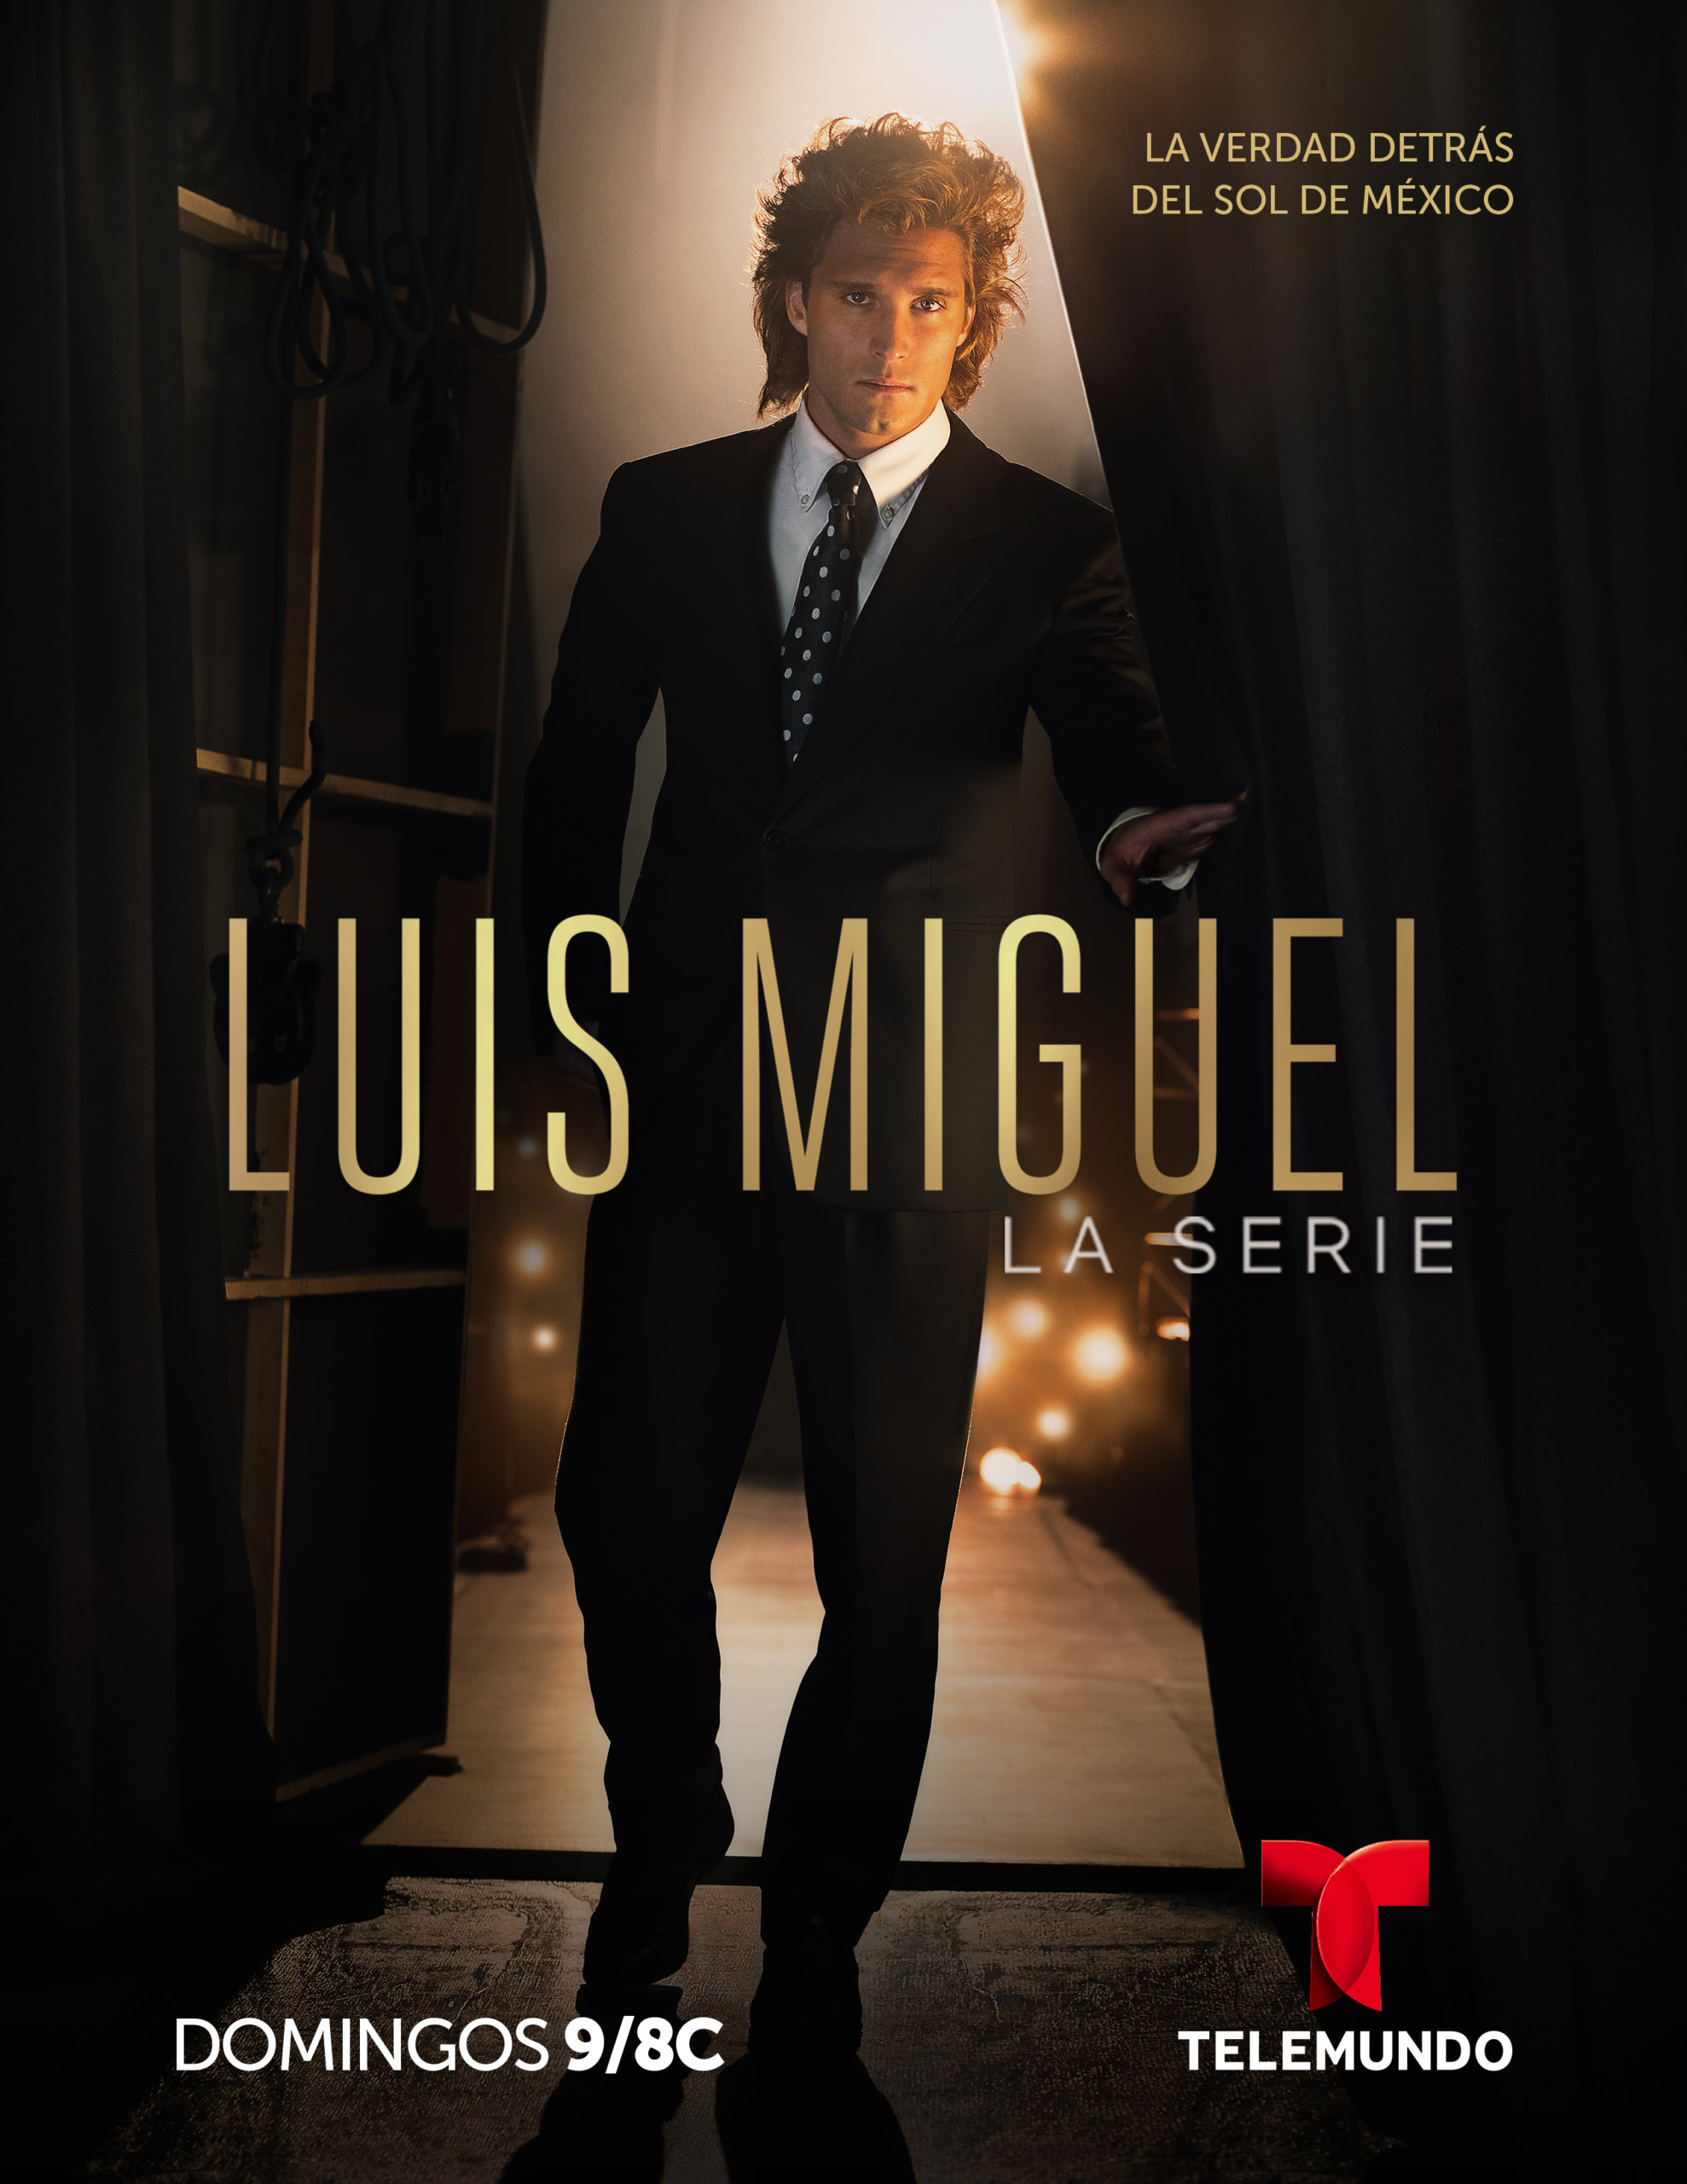 Izan Llunas estupendo como el “Solecito de México” en Luis Miguel La Serie